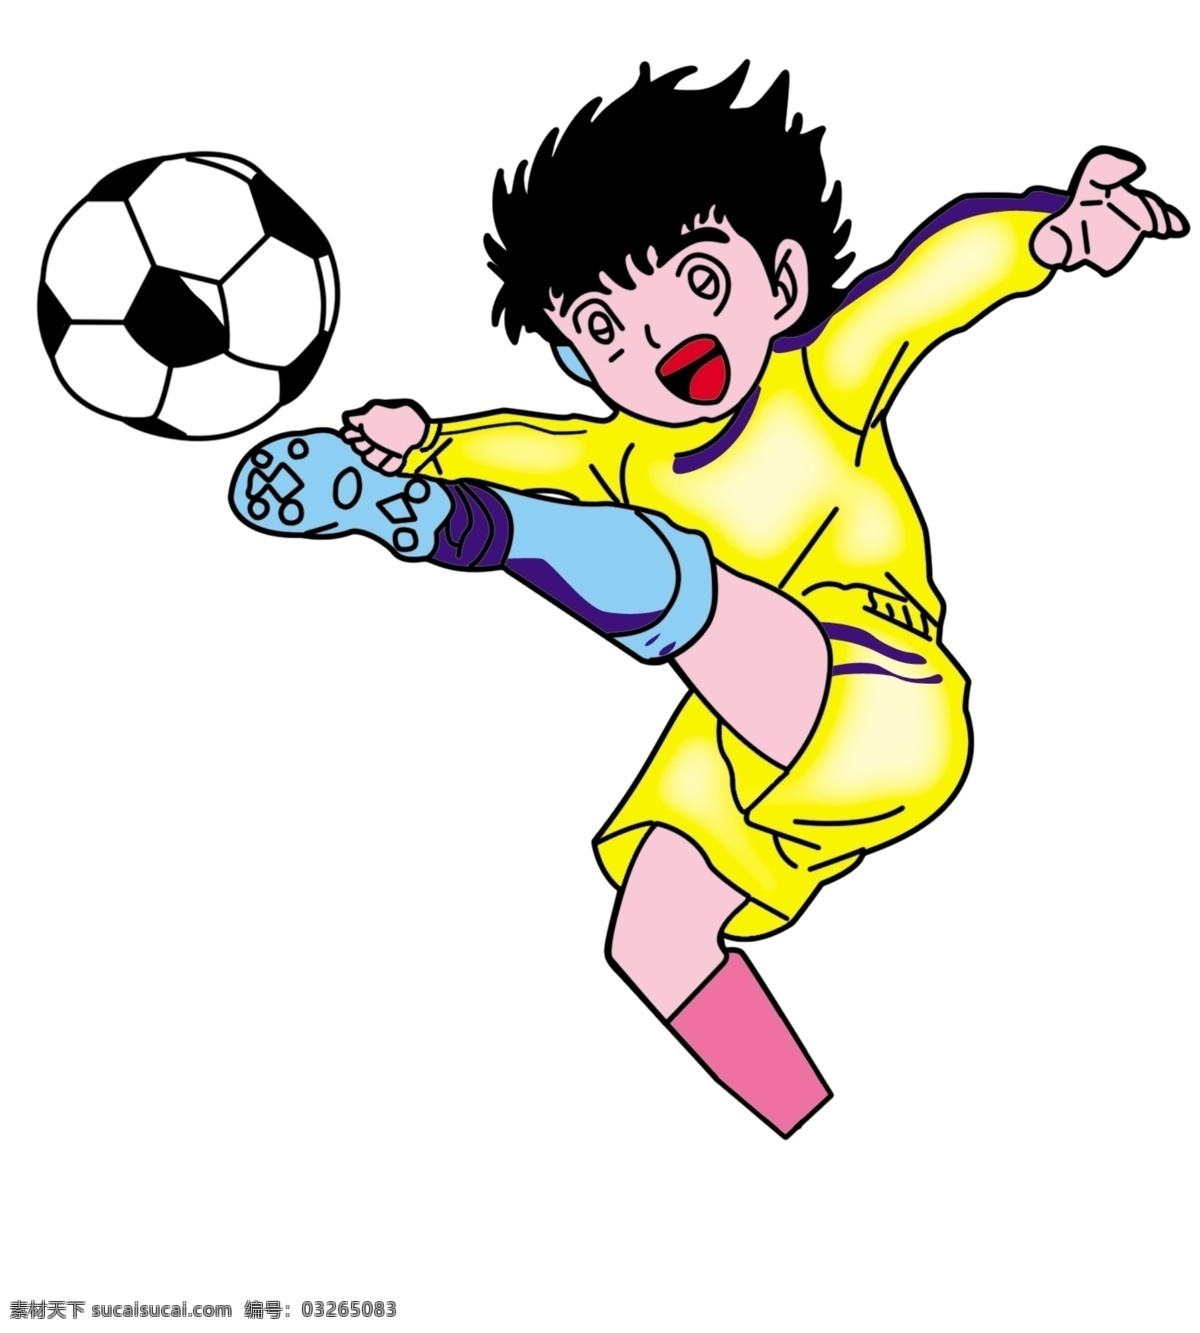 足球小子 足球 小人 卡通 球员 日本卡通人物 踢球 抬腿 分层 人物 源文件库